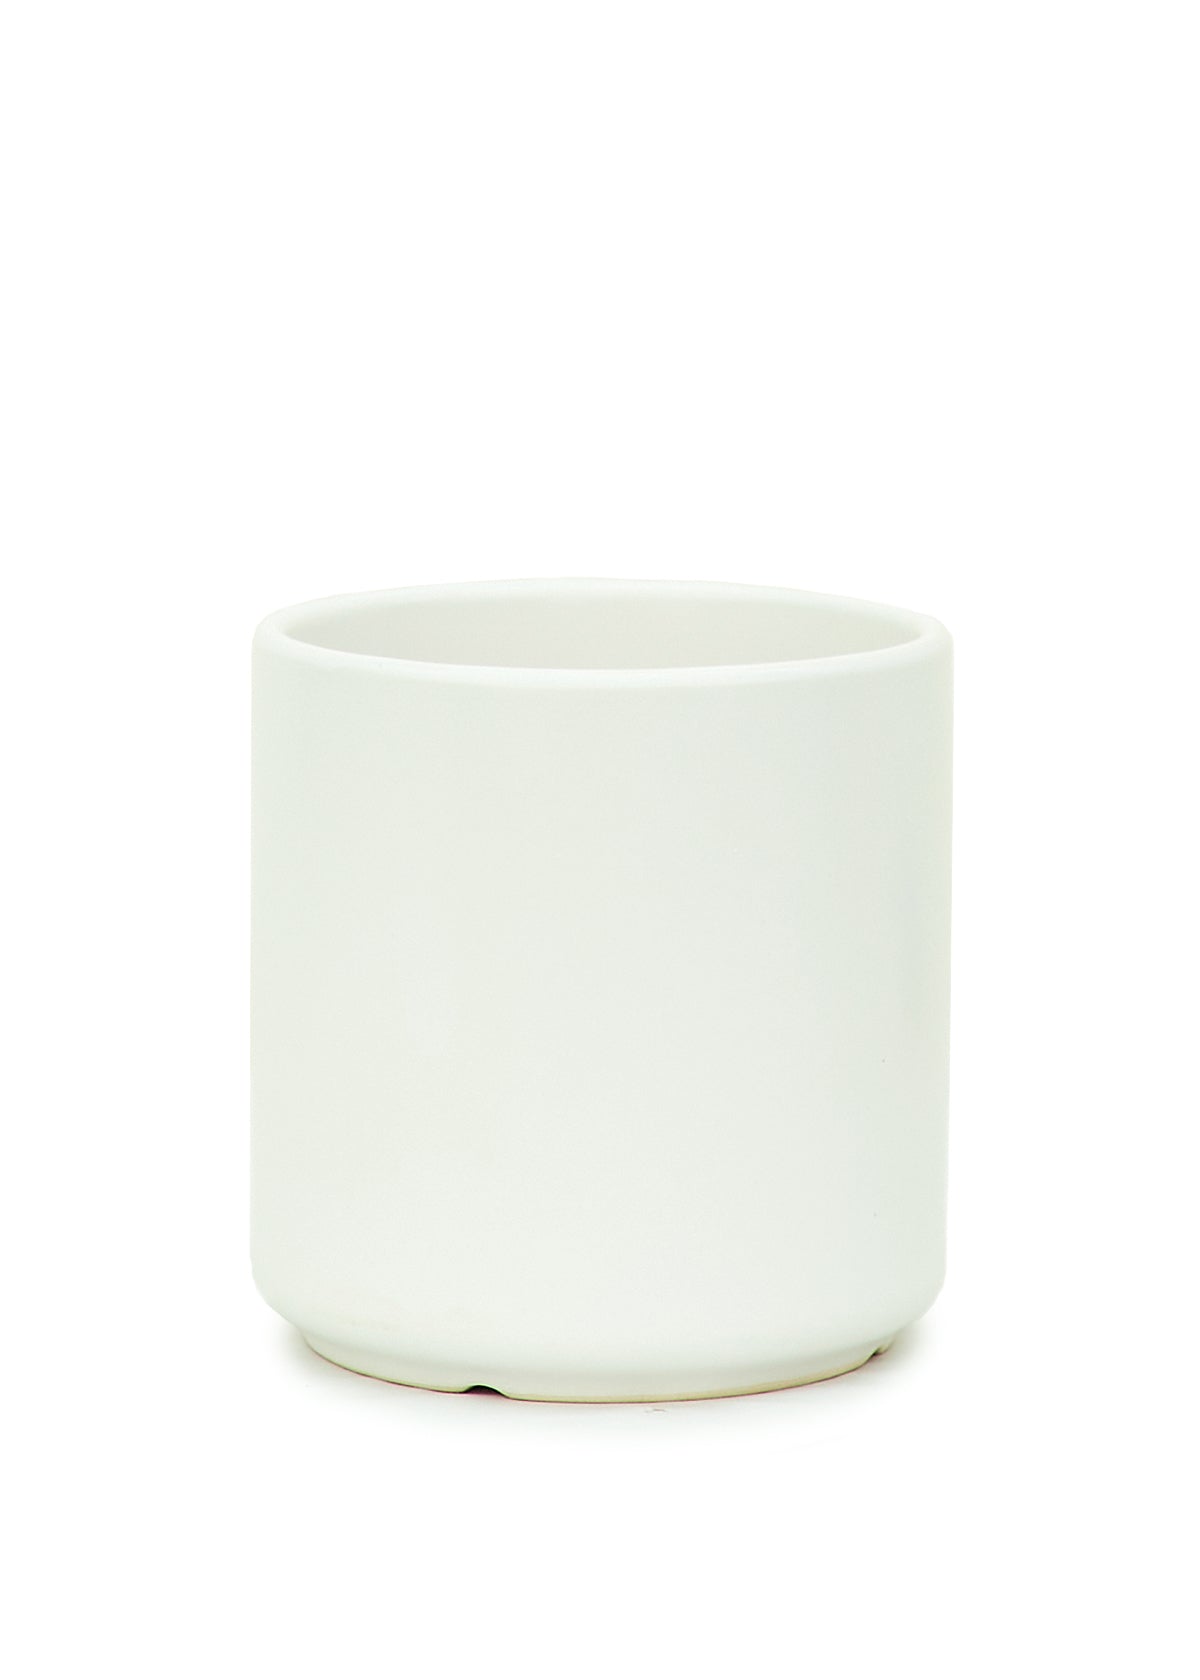 7" Wide White Ceramic Planter